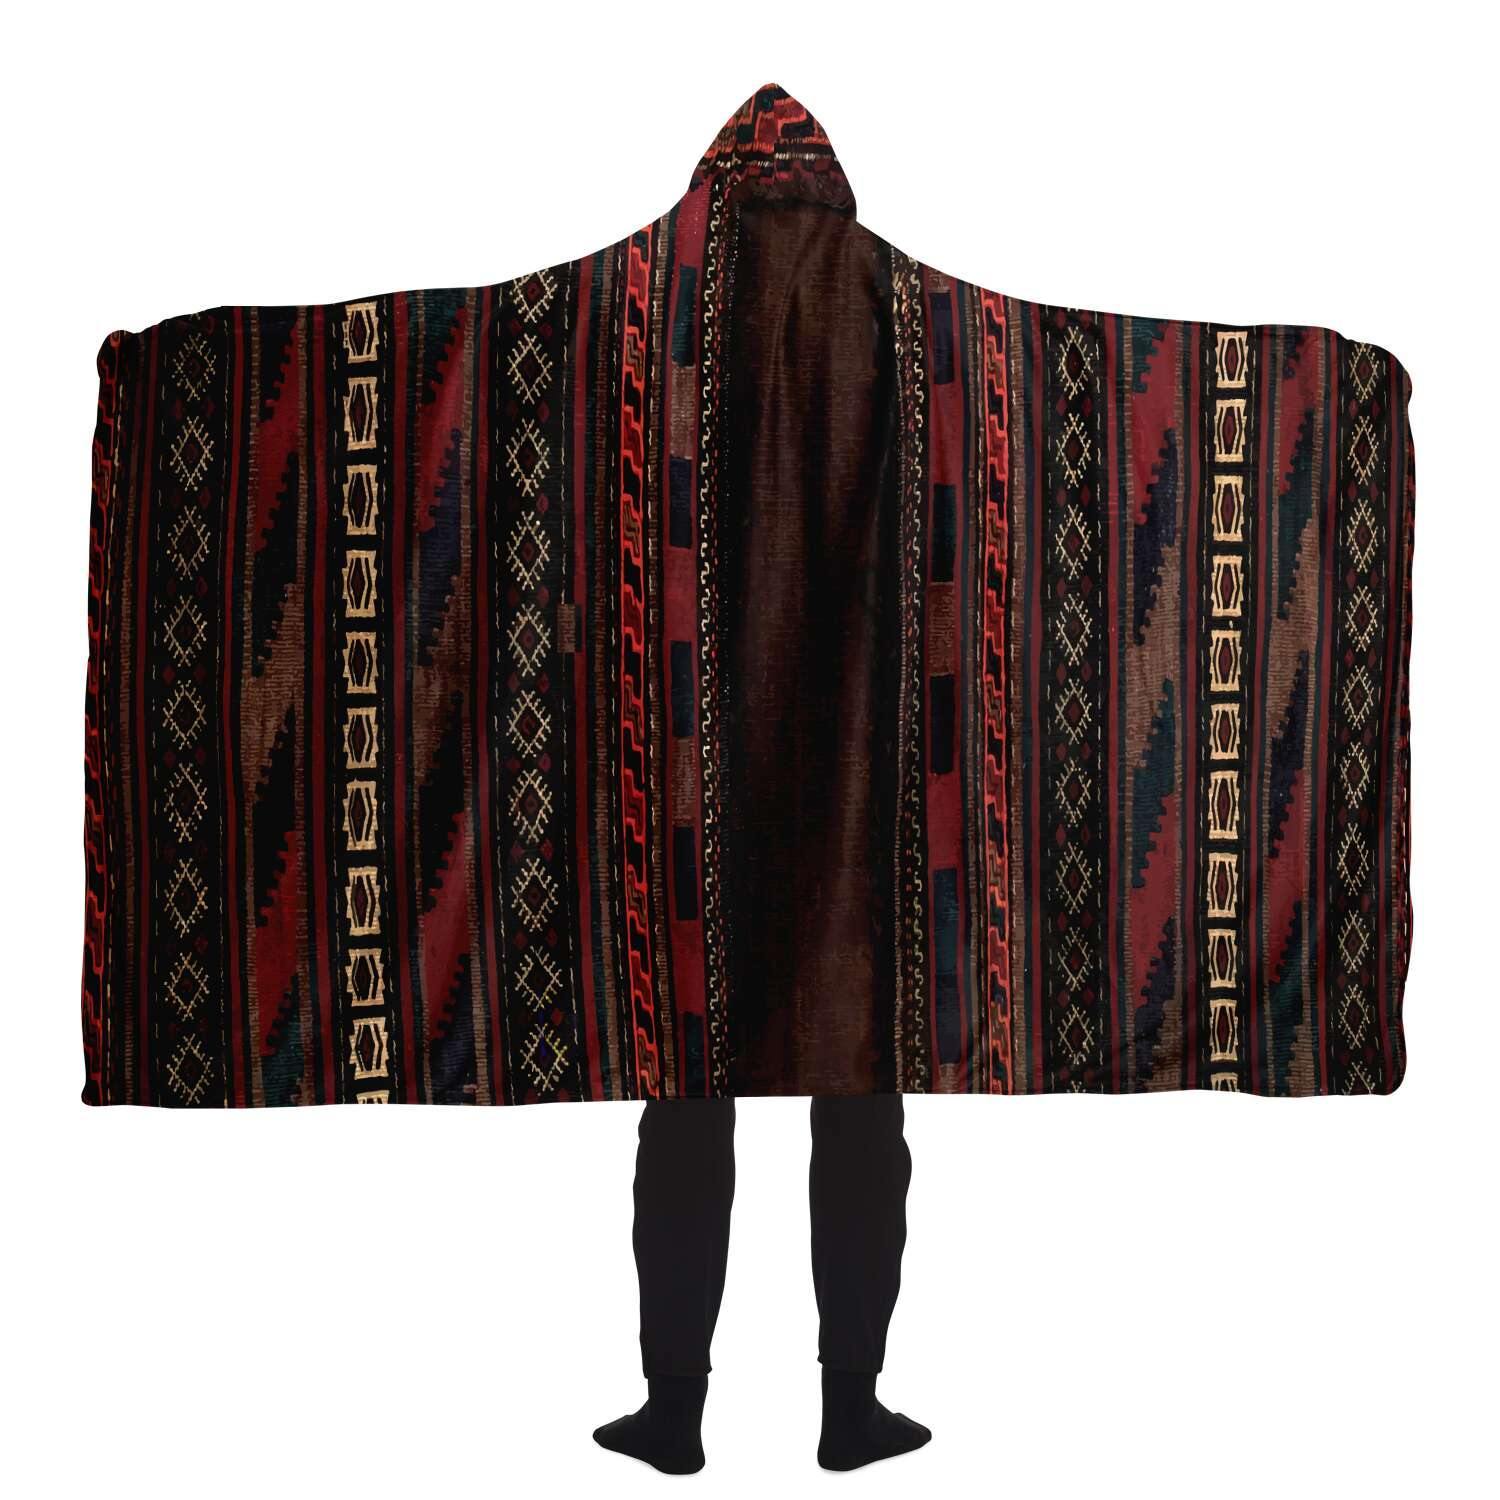 Hooded Blanket - AOP Antique Afghan Camel Bag Hooded Blanket